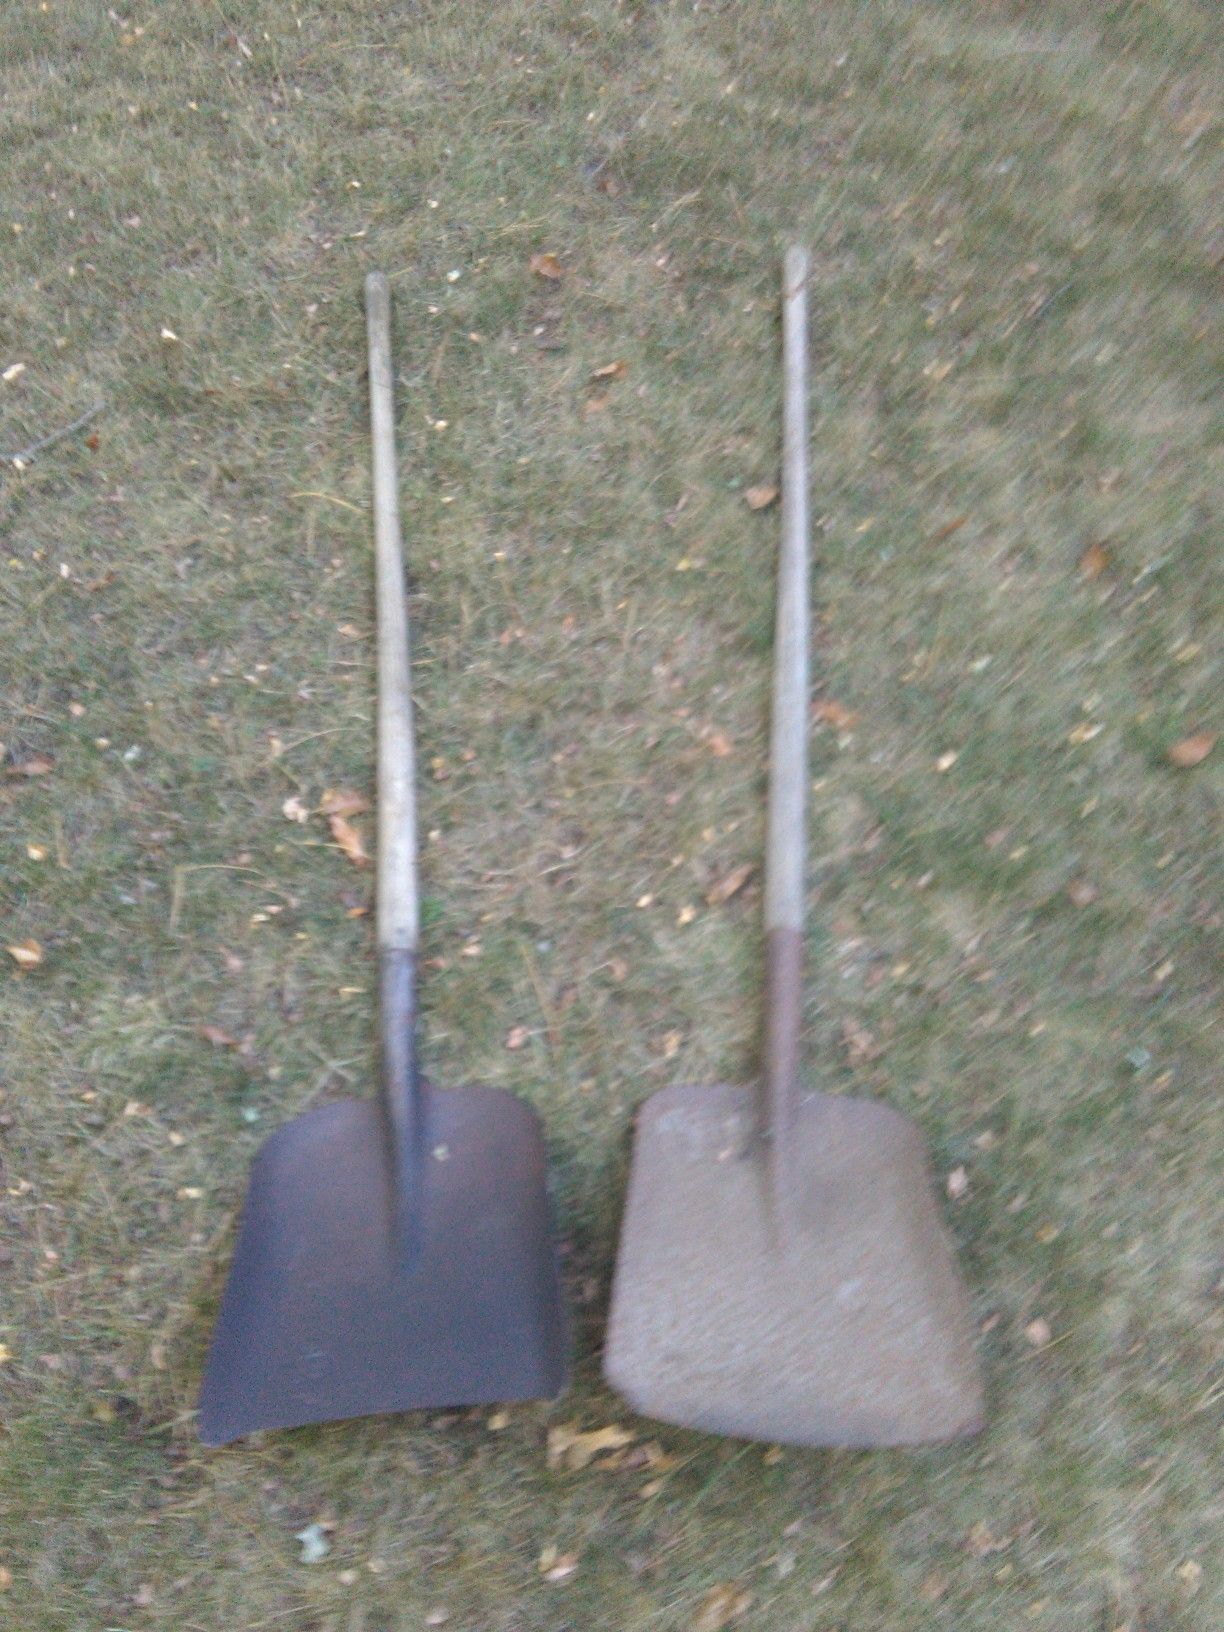 2 metal shovels wooden ja does landscaping yard work digging